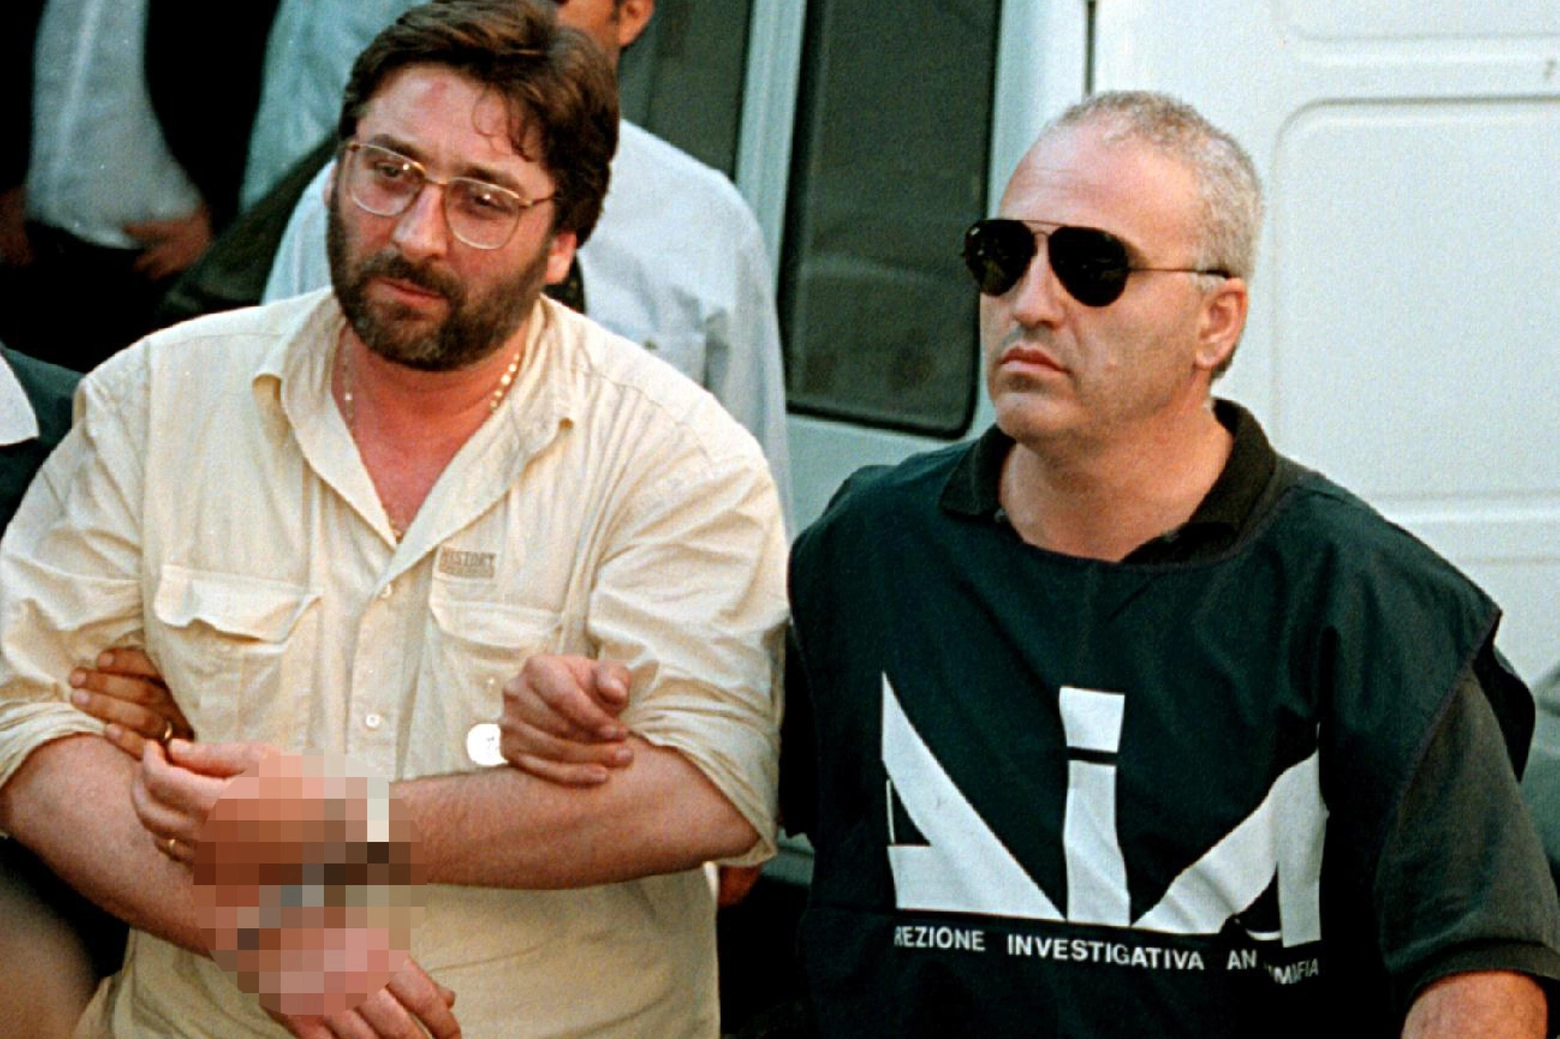 Il boss Francesco Schiavone – oggi 70 anni – è in carcere dall’11 luglio 1998